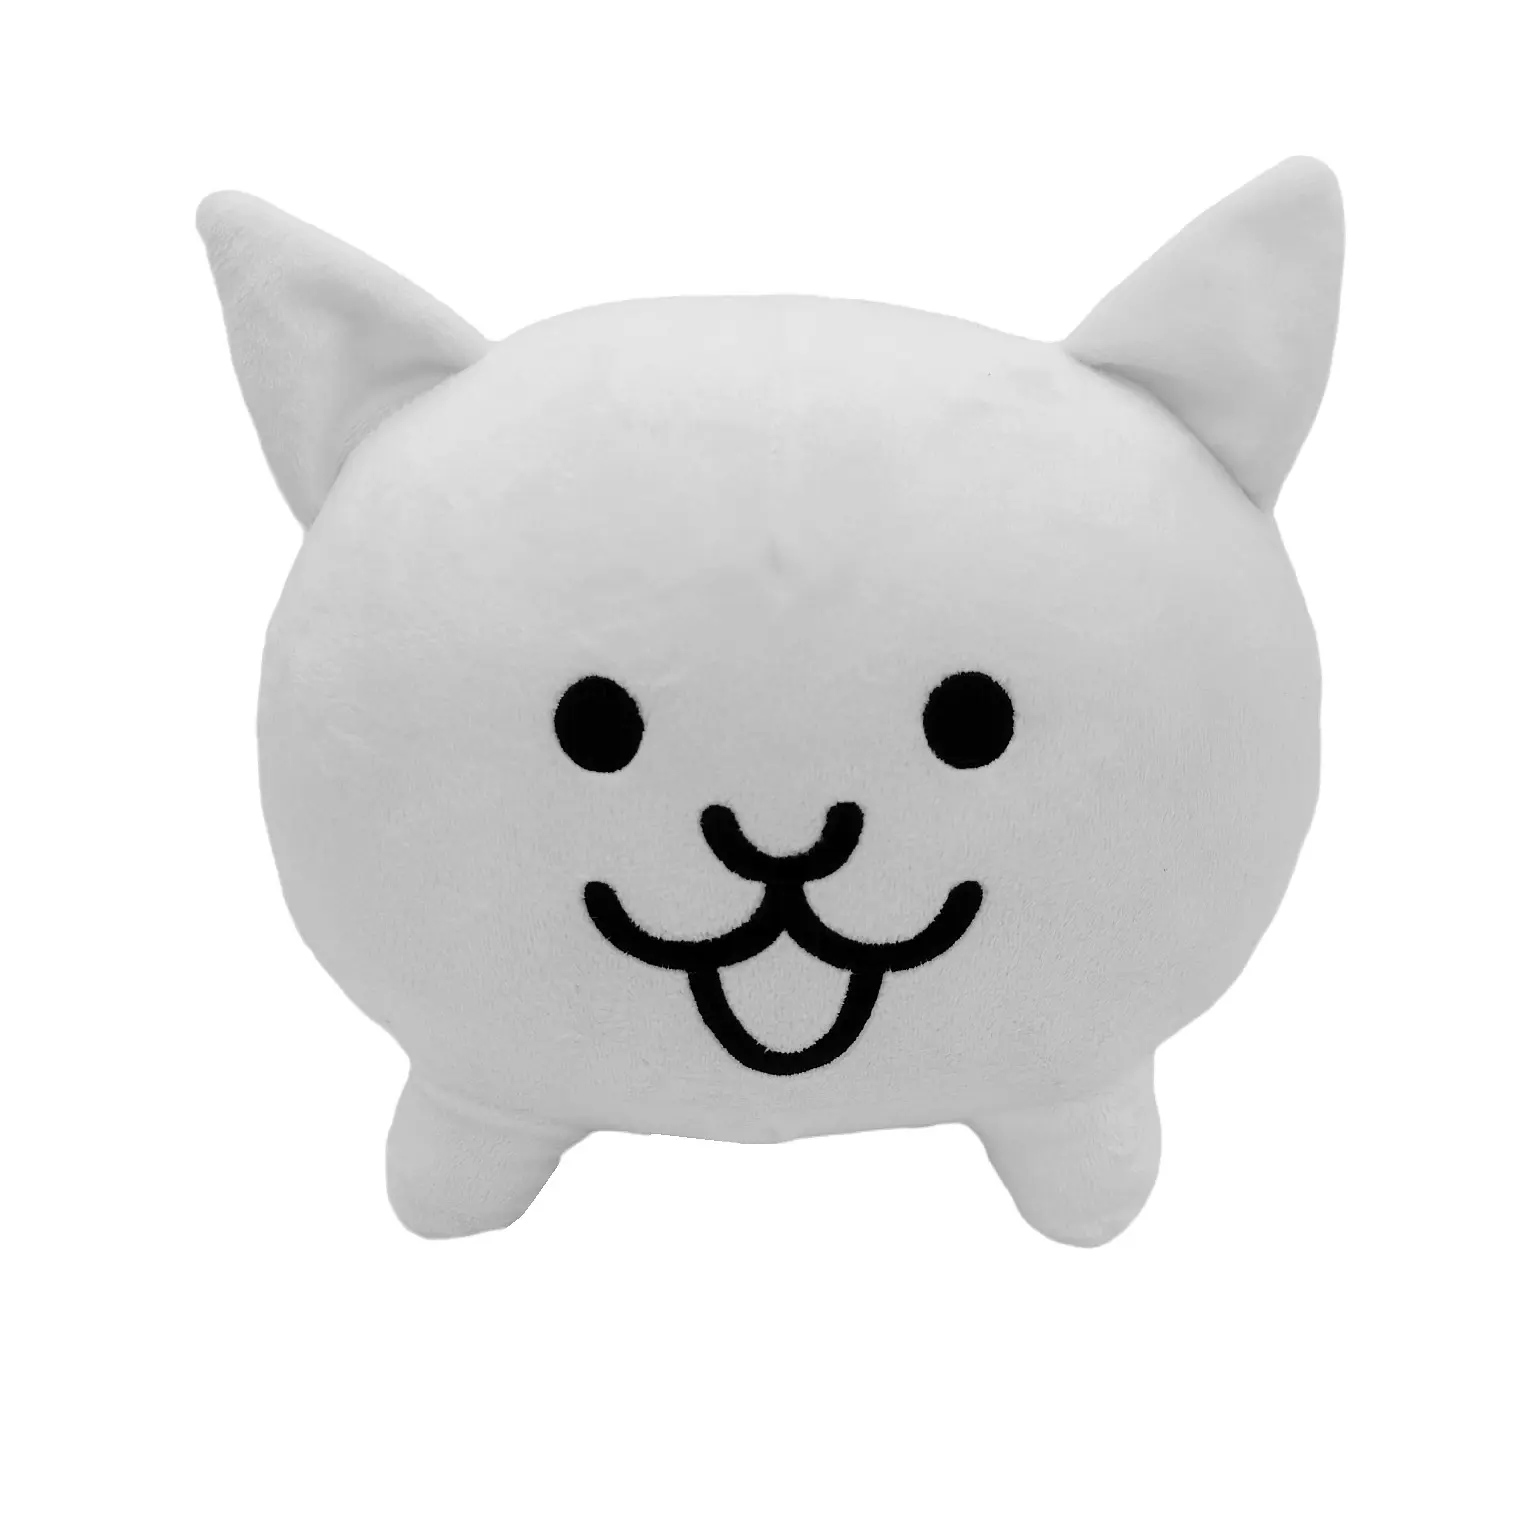 دمية القطيفة اللطيفة من شخصيات ألعاب الكرتون الأنيمي البيضاء Neko القطيفة دمية القطيفة قطة معركة القطط